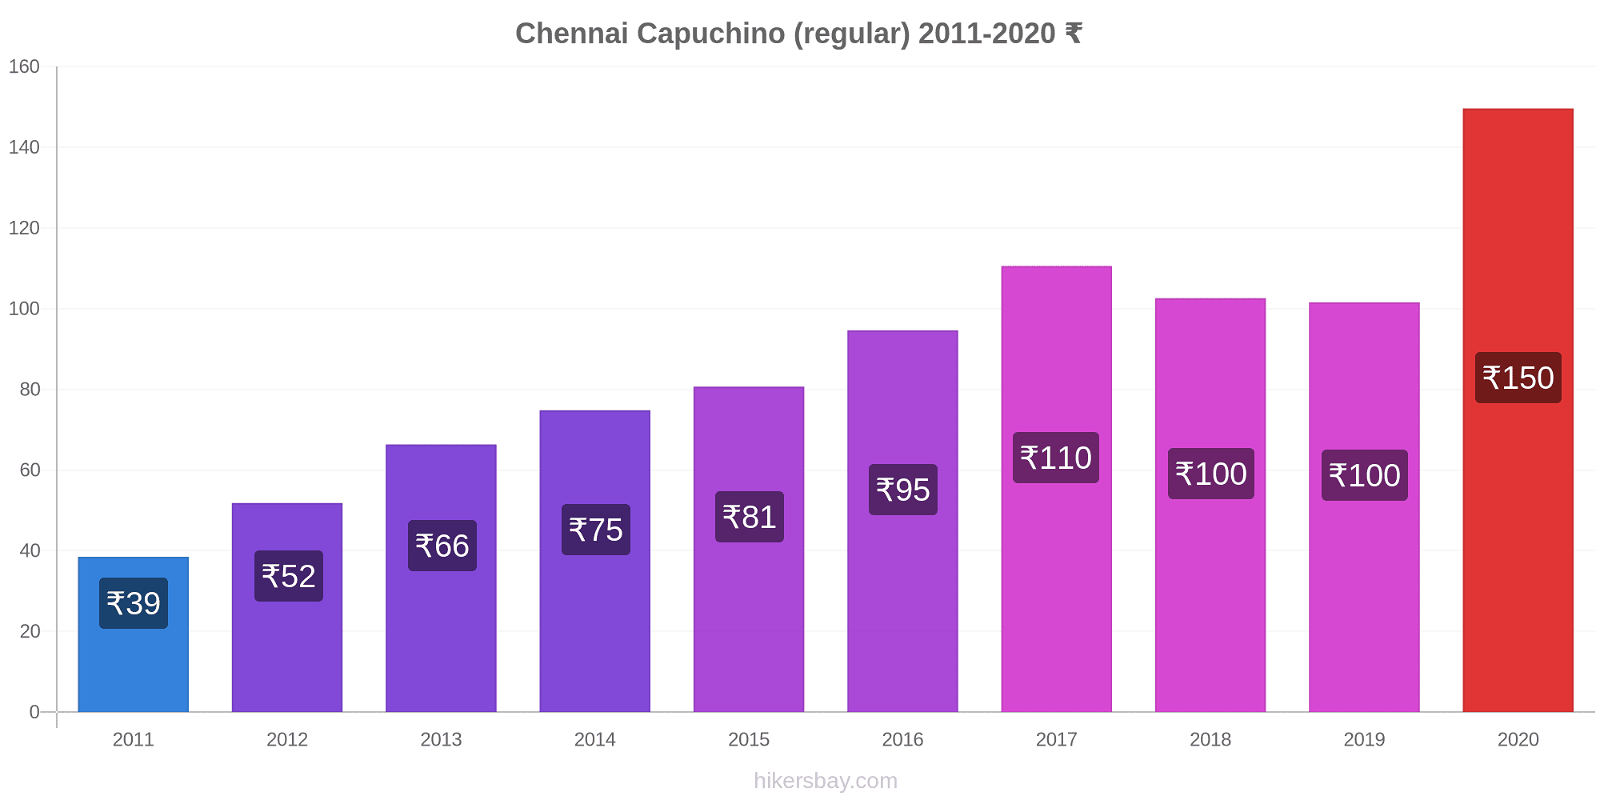 Chennai cambios de precios Capuchino (regular) hikersbay.com